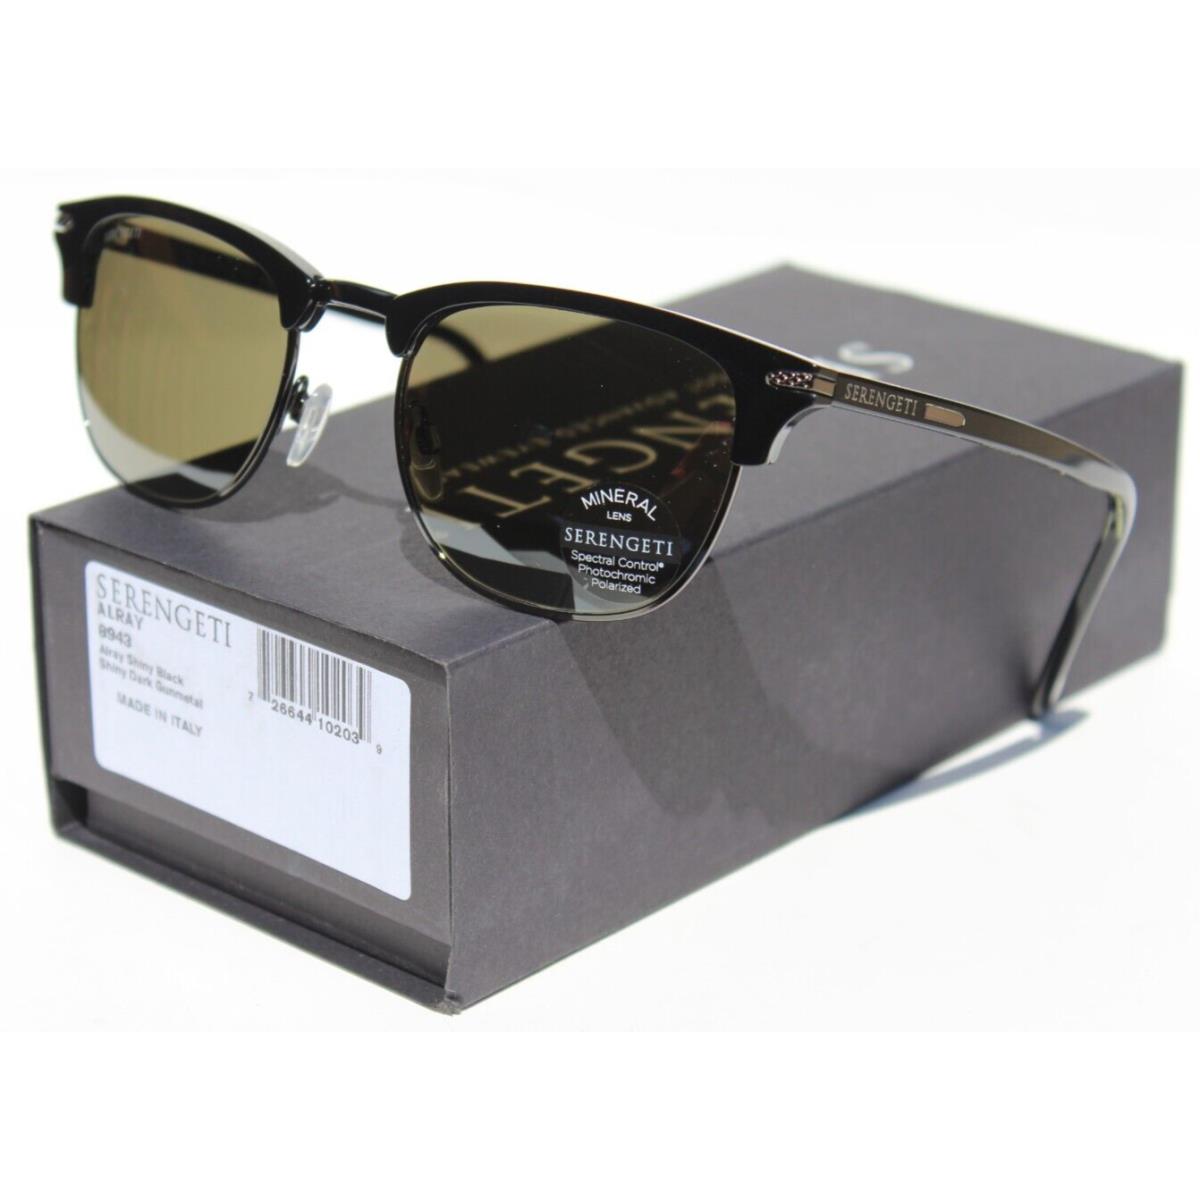 Serengeti Alray Polarized Sunglasses Black Gunmetal/gray Green 8943 Italy